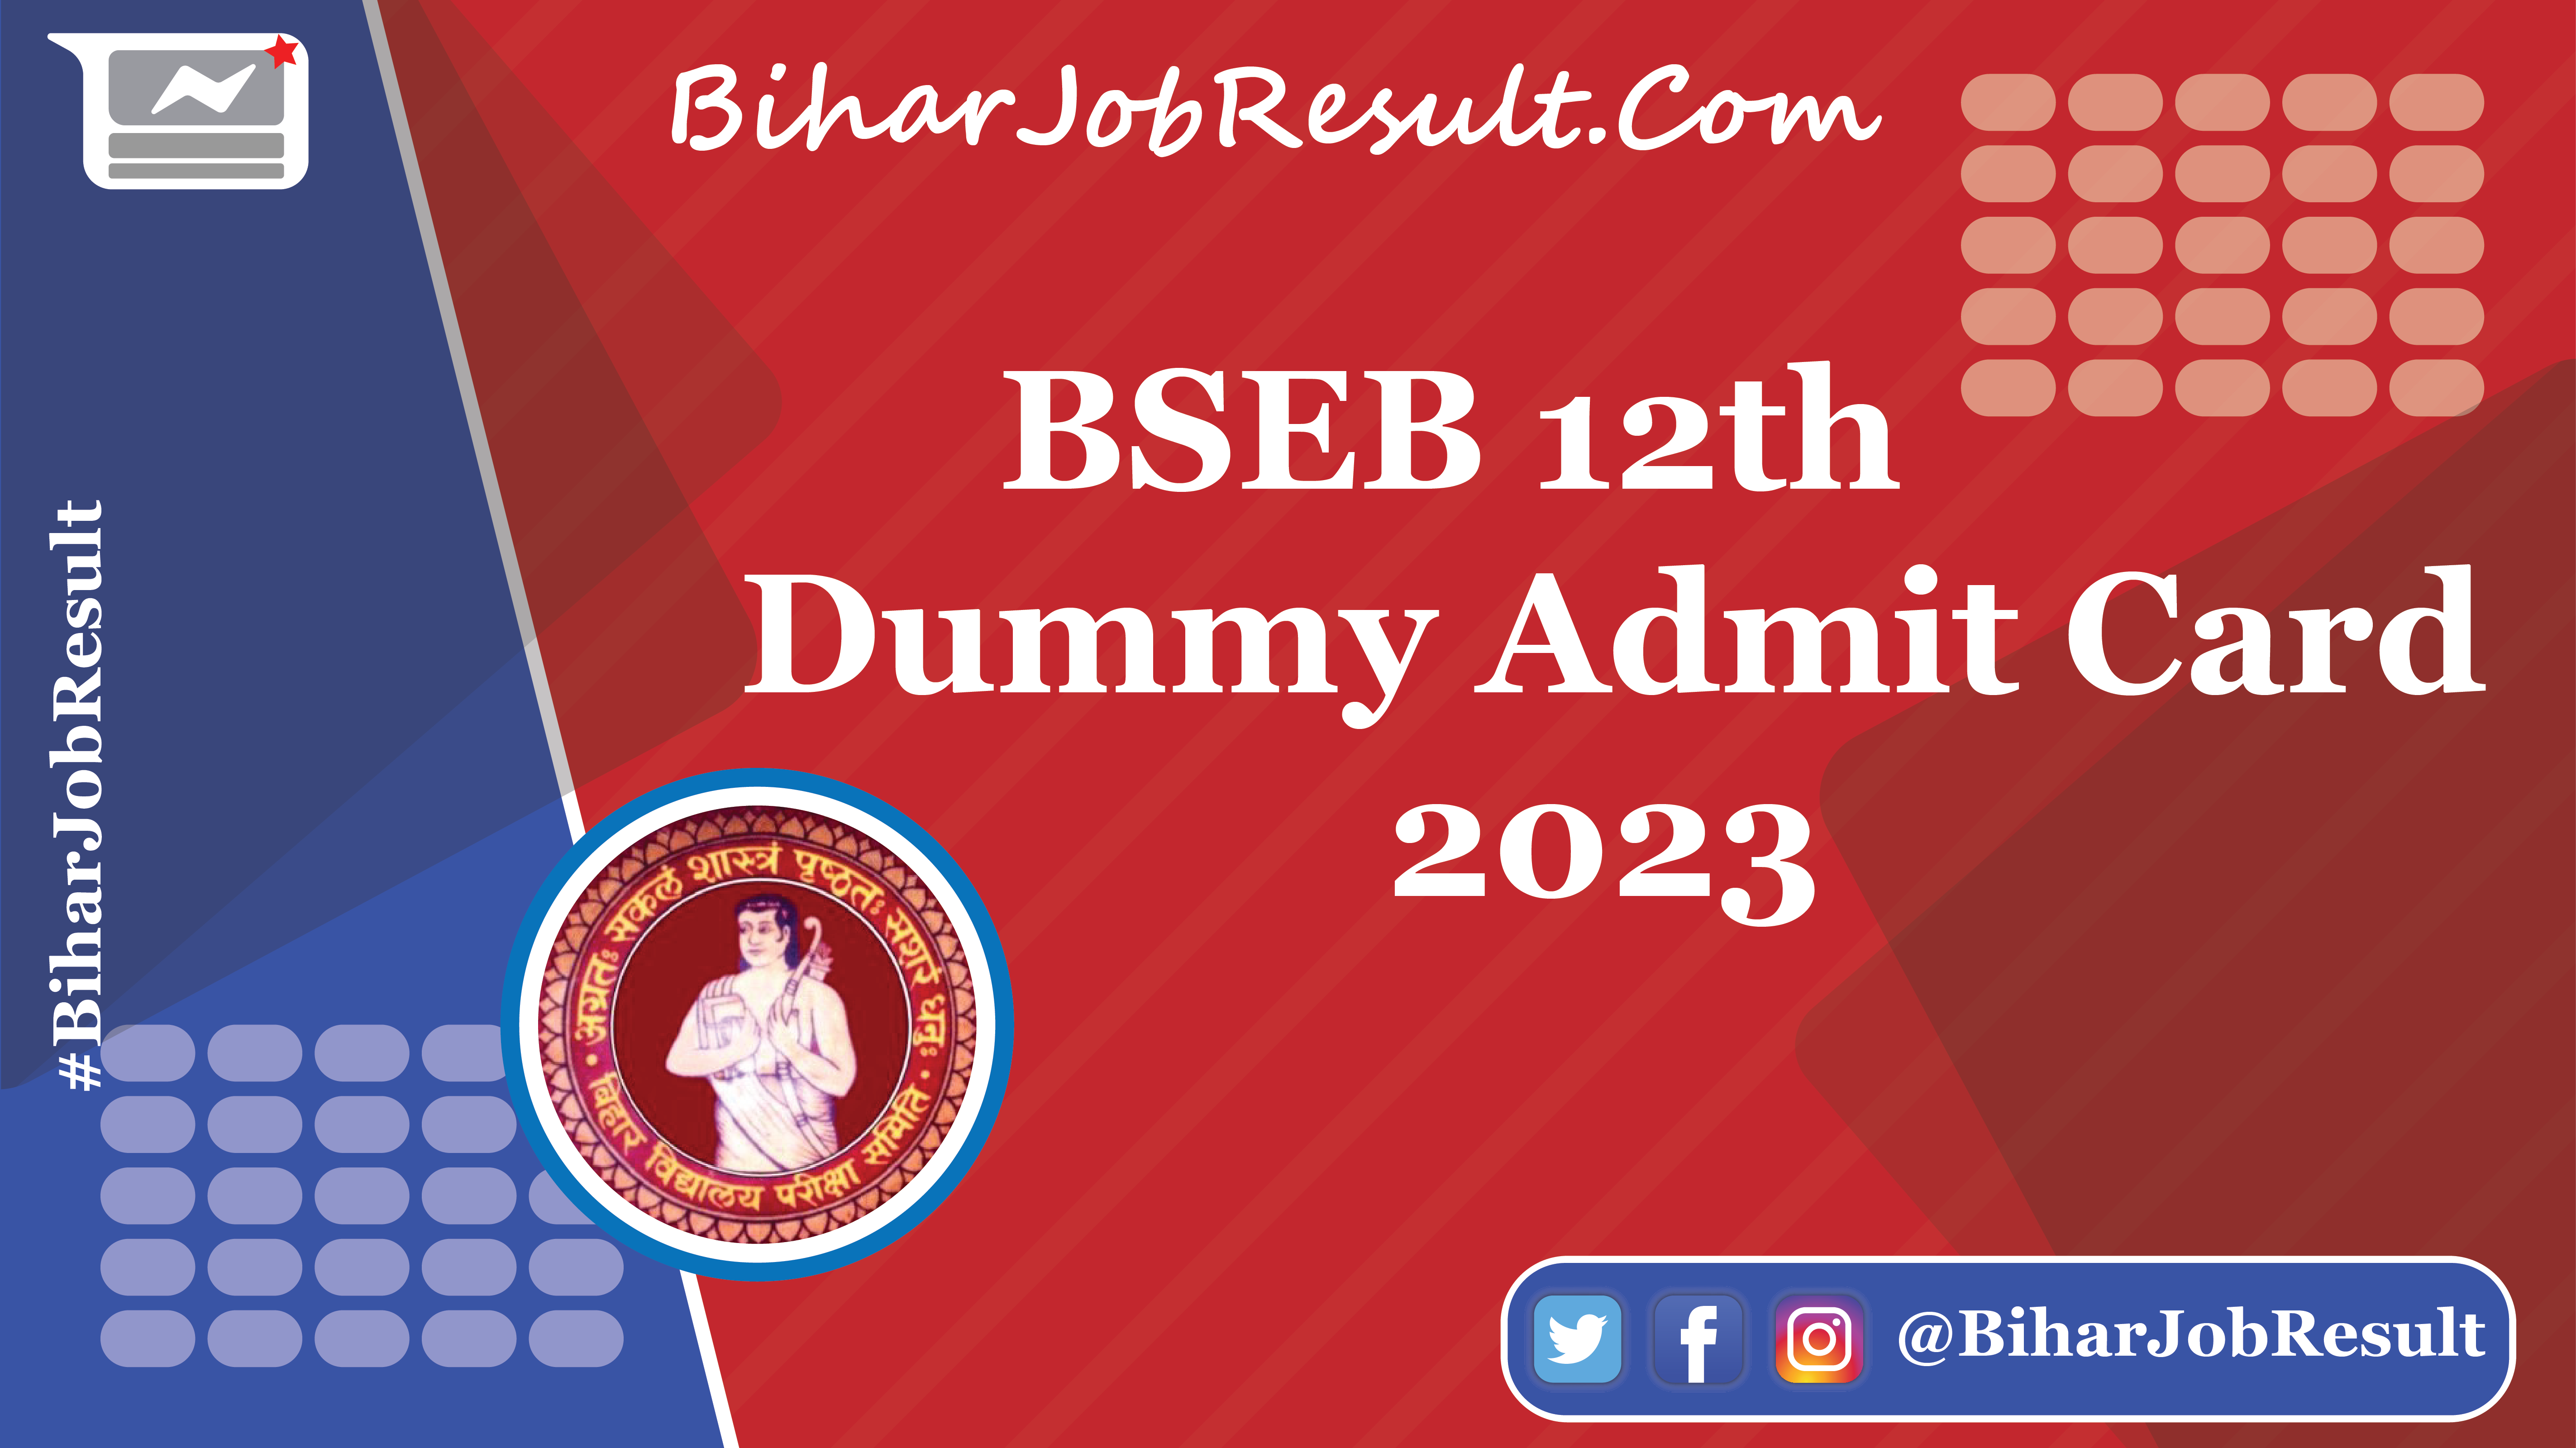 BSEB 12th Dummy Admit Card 2023